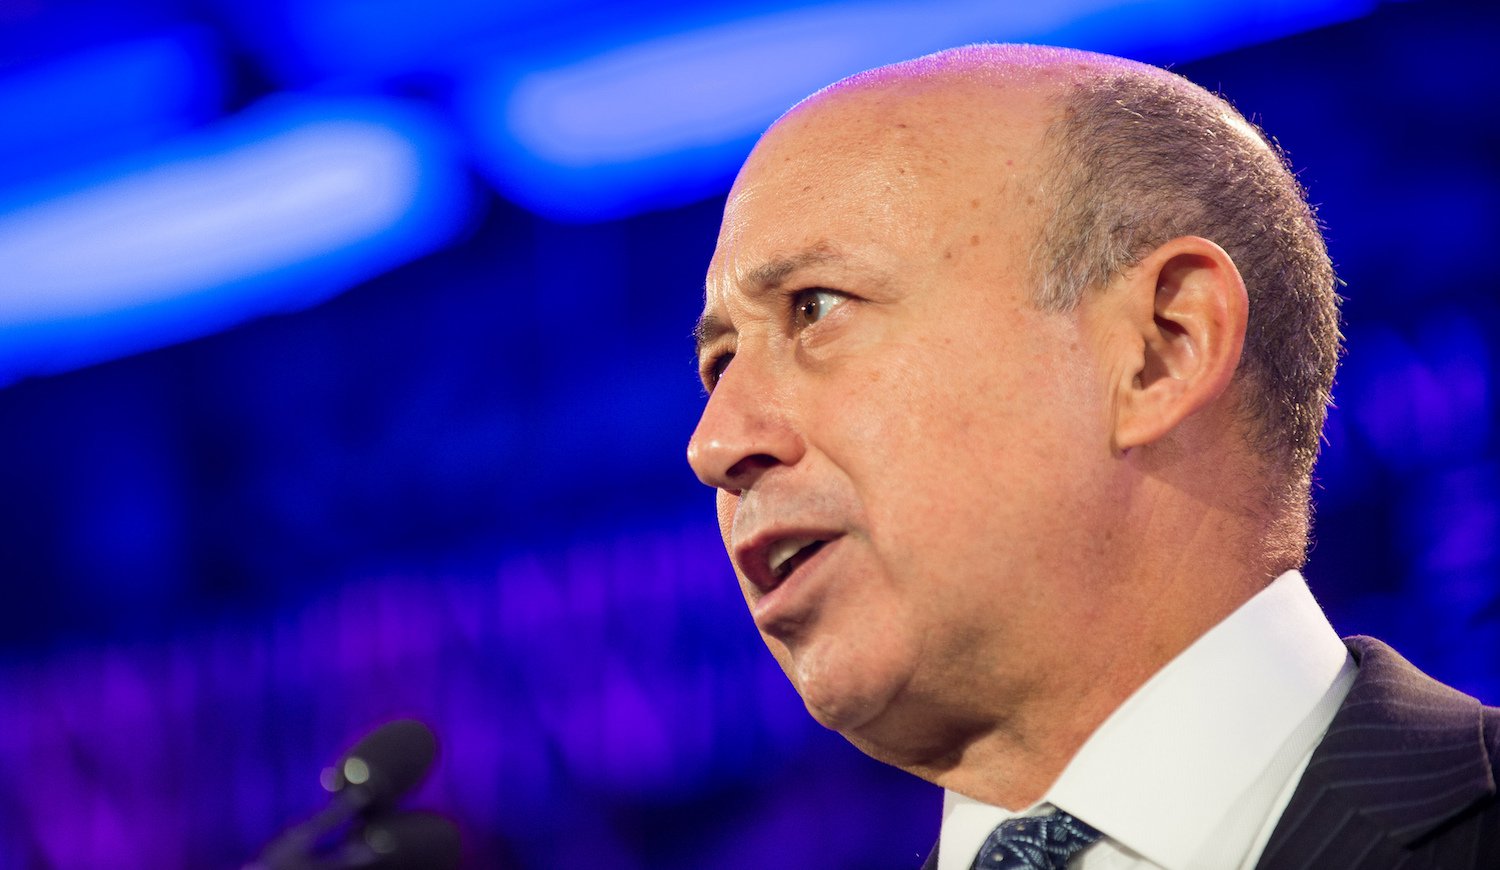 “Биткойн слишком волатилен для Goldman Sachs”, - говорит генеральный директор